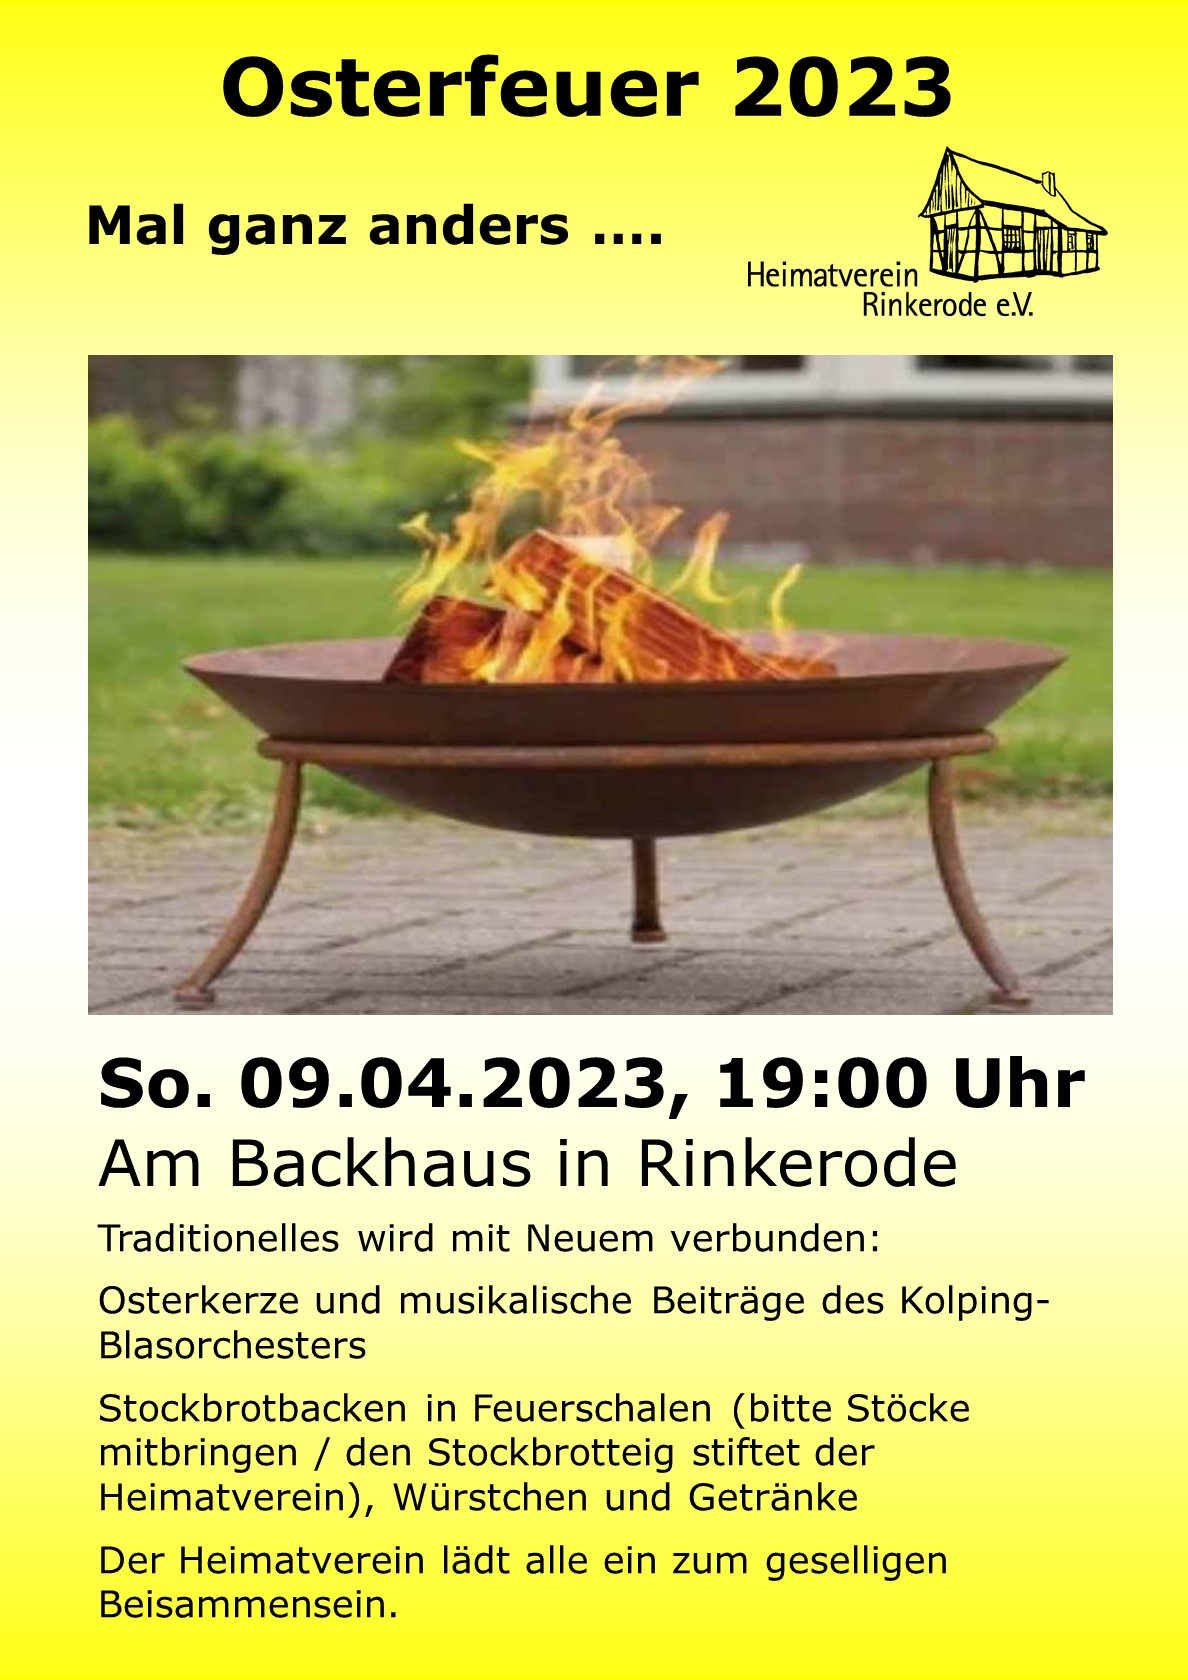 Plakat zum Osterfeuer des Heimatvereins Rinkerode 2023